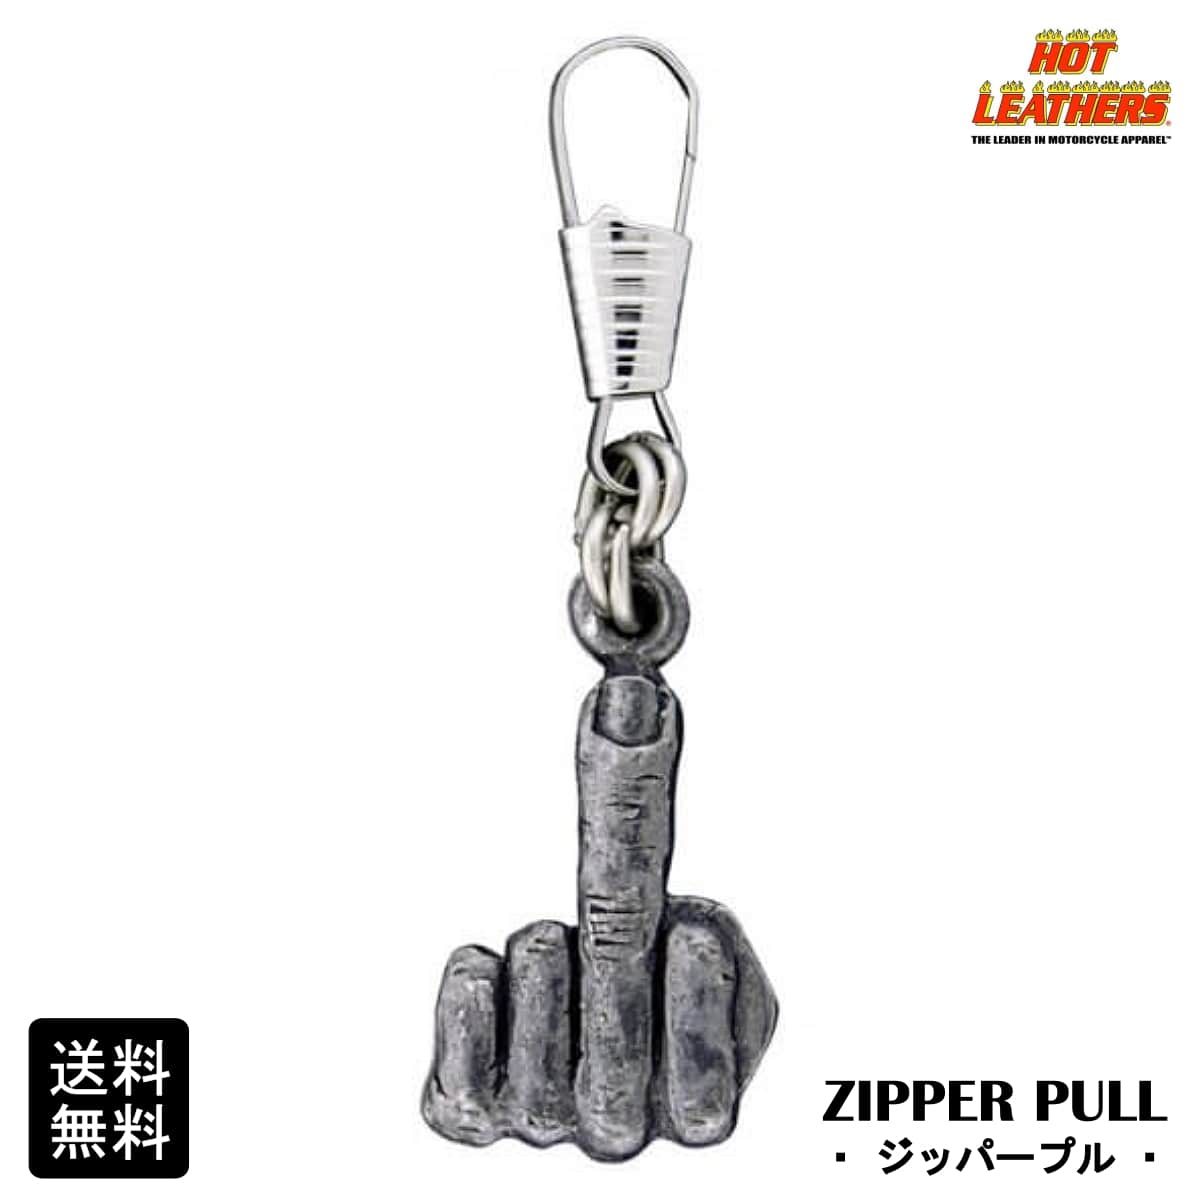 米国直輸入 HOTLEATHERS The Finger Zipper Pull ホットレザー ザ フィンガー ジッパープル ジッパータブ ファスナー ジッパーの取手につけるバイカーズ アクセサリー 手袋でもジッパーが掴みやすい キーホルダー ピューター製 シルバーカラー